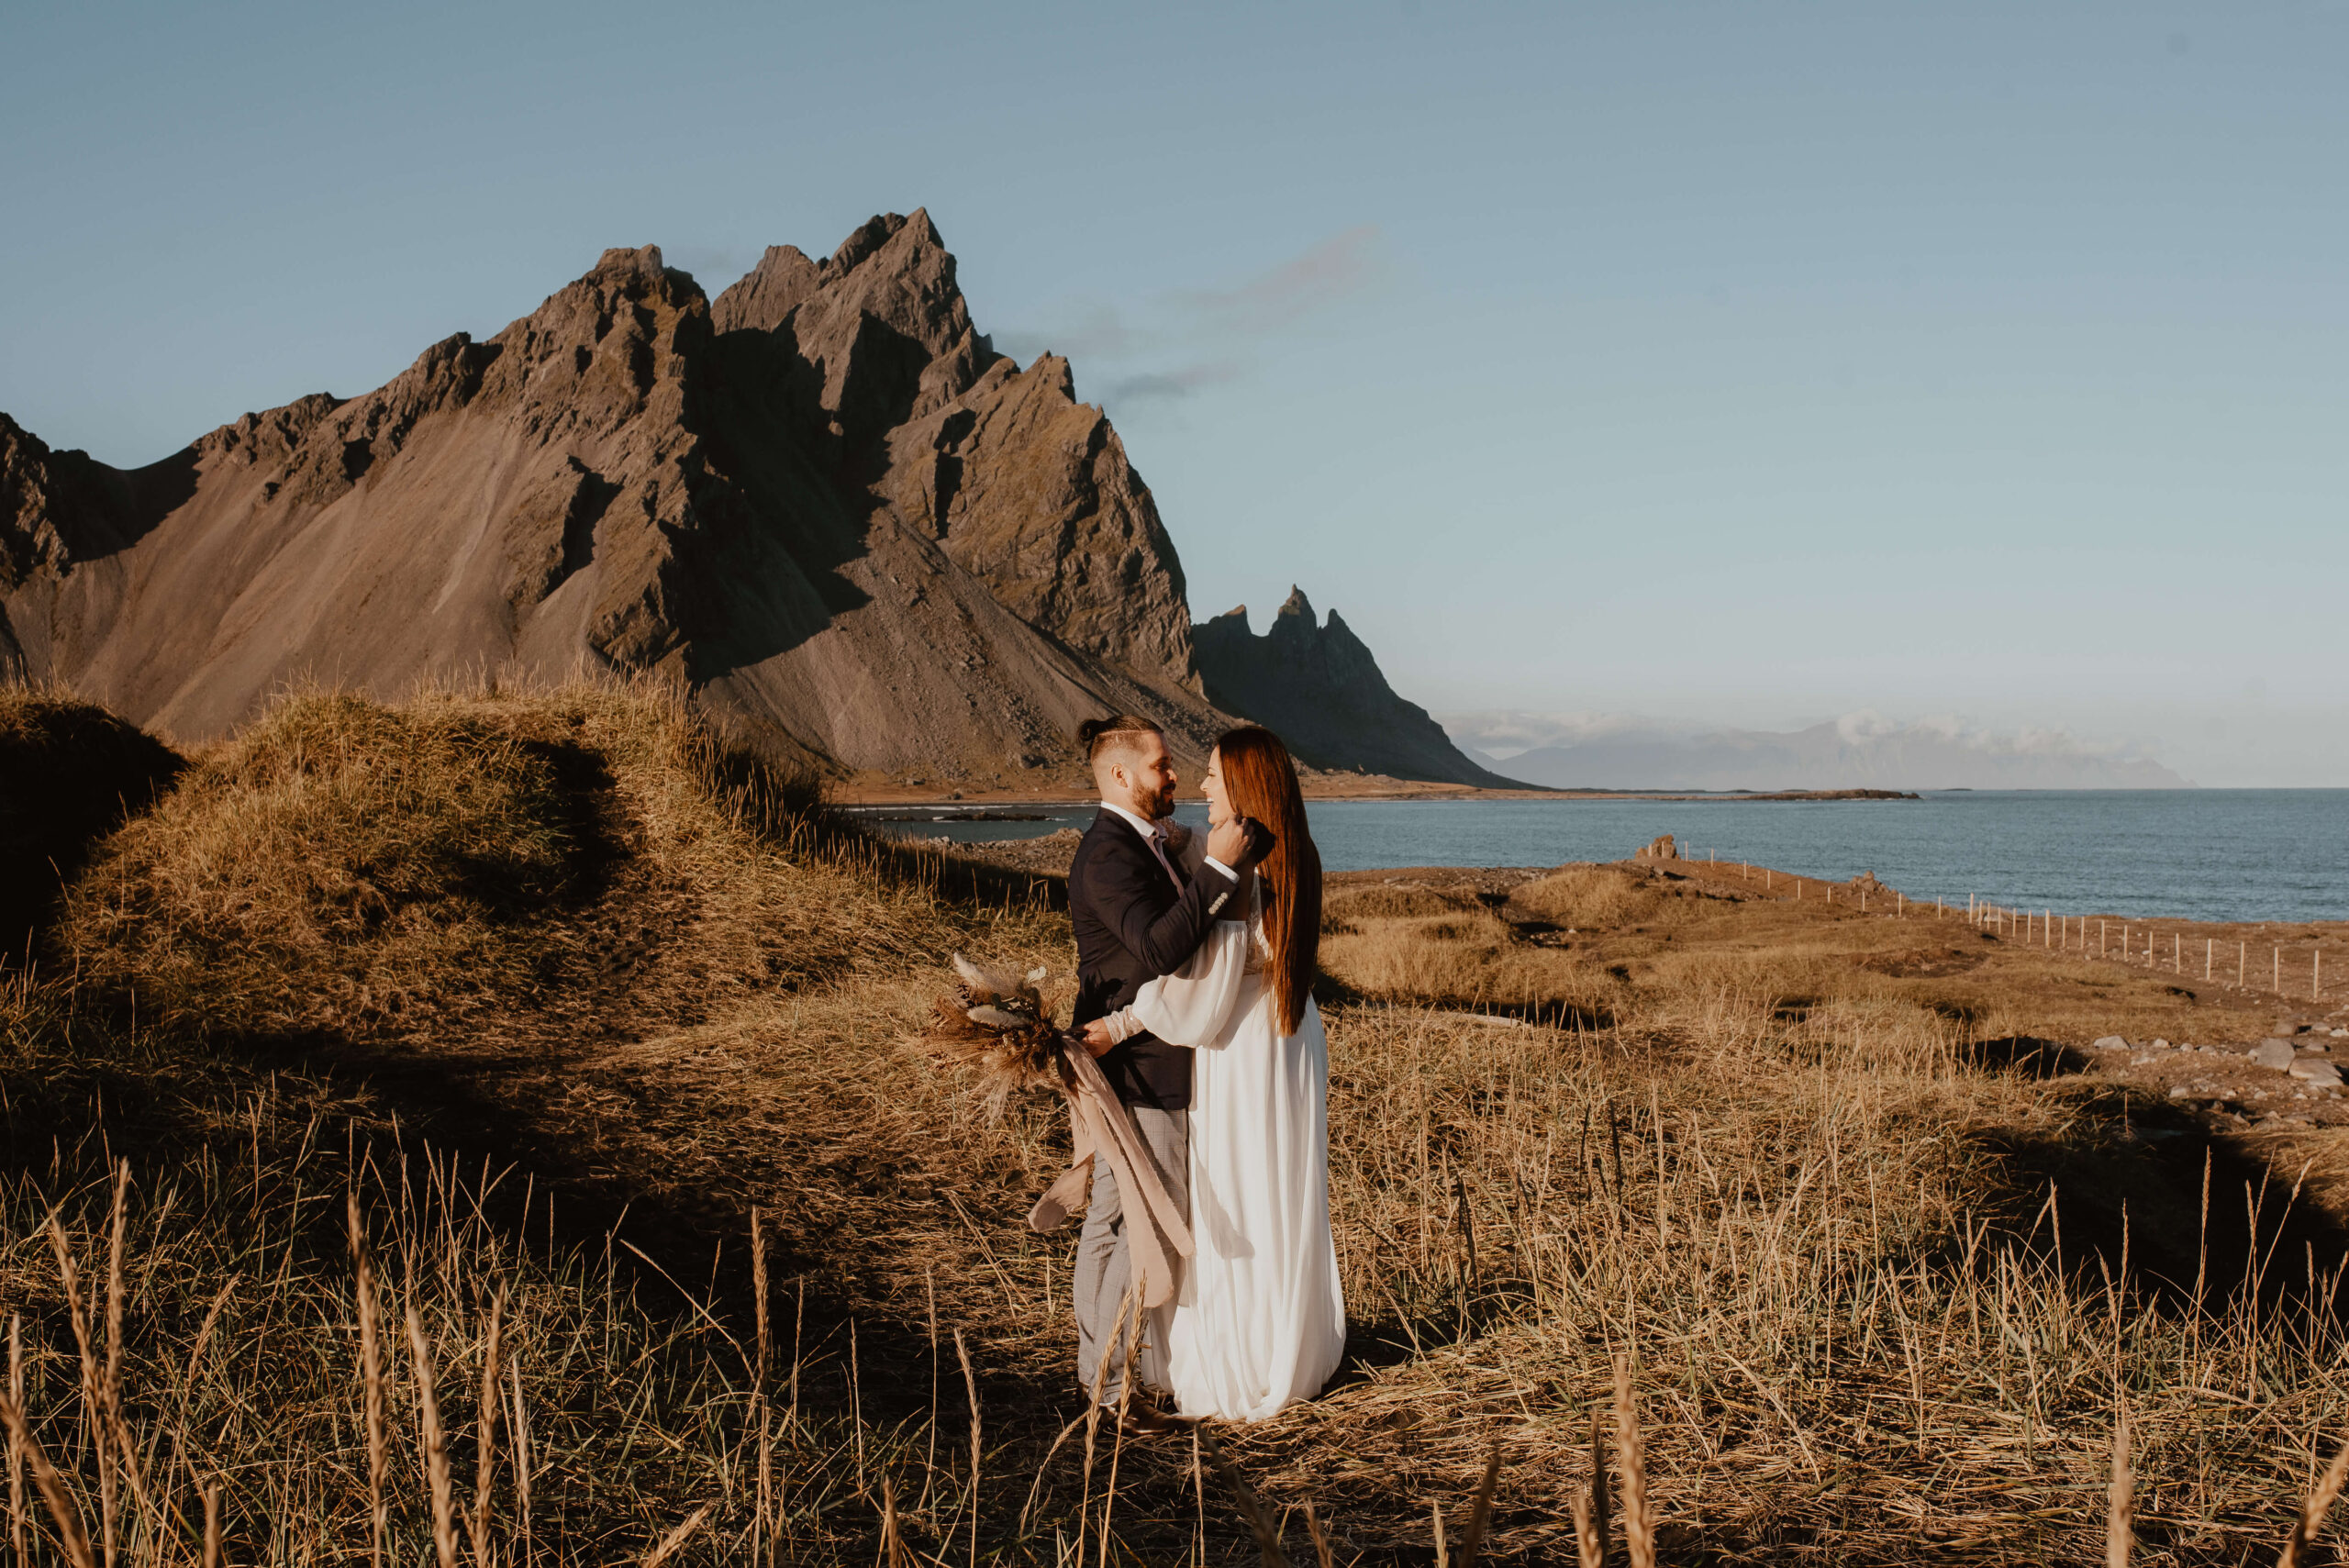 Die Fotos zeigen ein junges Paar in Hochzeitskleidung auf Island, an einem warmen Tag, im Hintergrund sieht man riesige Berge und das Meer. Das Paar schaut sich in die Augen, umarmt sich und lacht, während man im Hintergrund das Rauschen der Wellen hören kann. Diese Bilder sind der perfekte Beweis für die Schönheit und den Zauber einer Hochzeit im Ausland. Schlüsselwort: Auslandshochzeit. Katarzyna Nord Fotografie